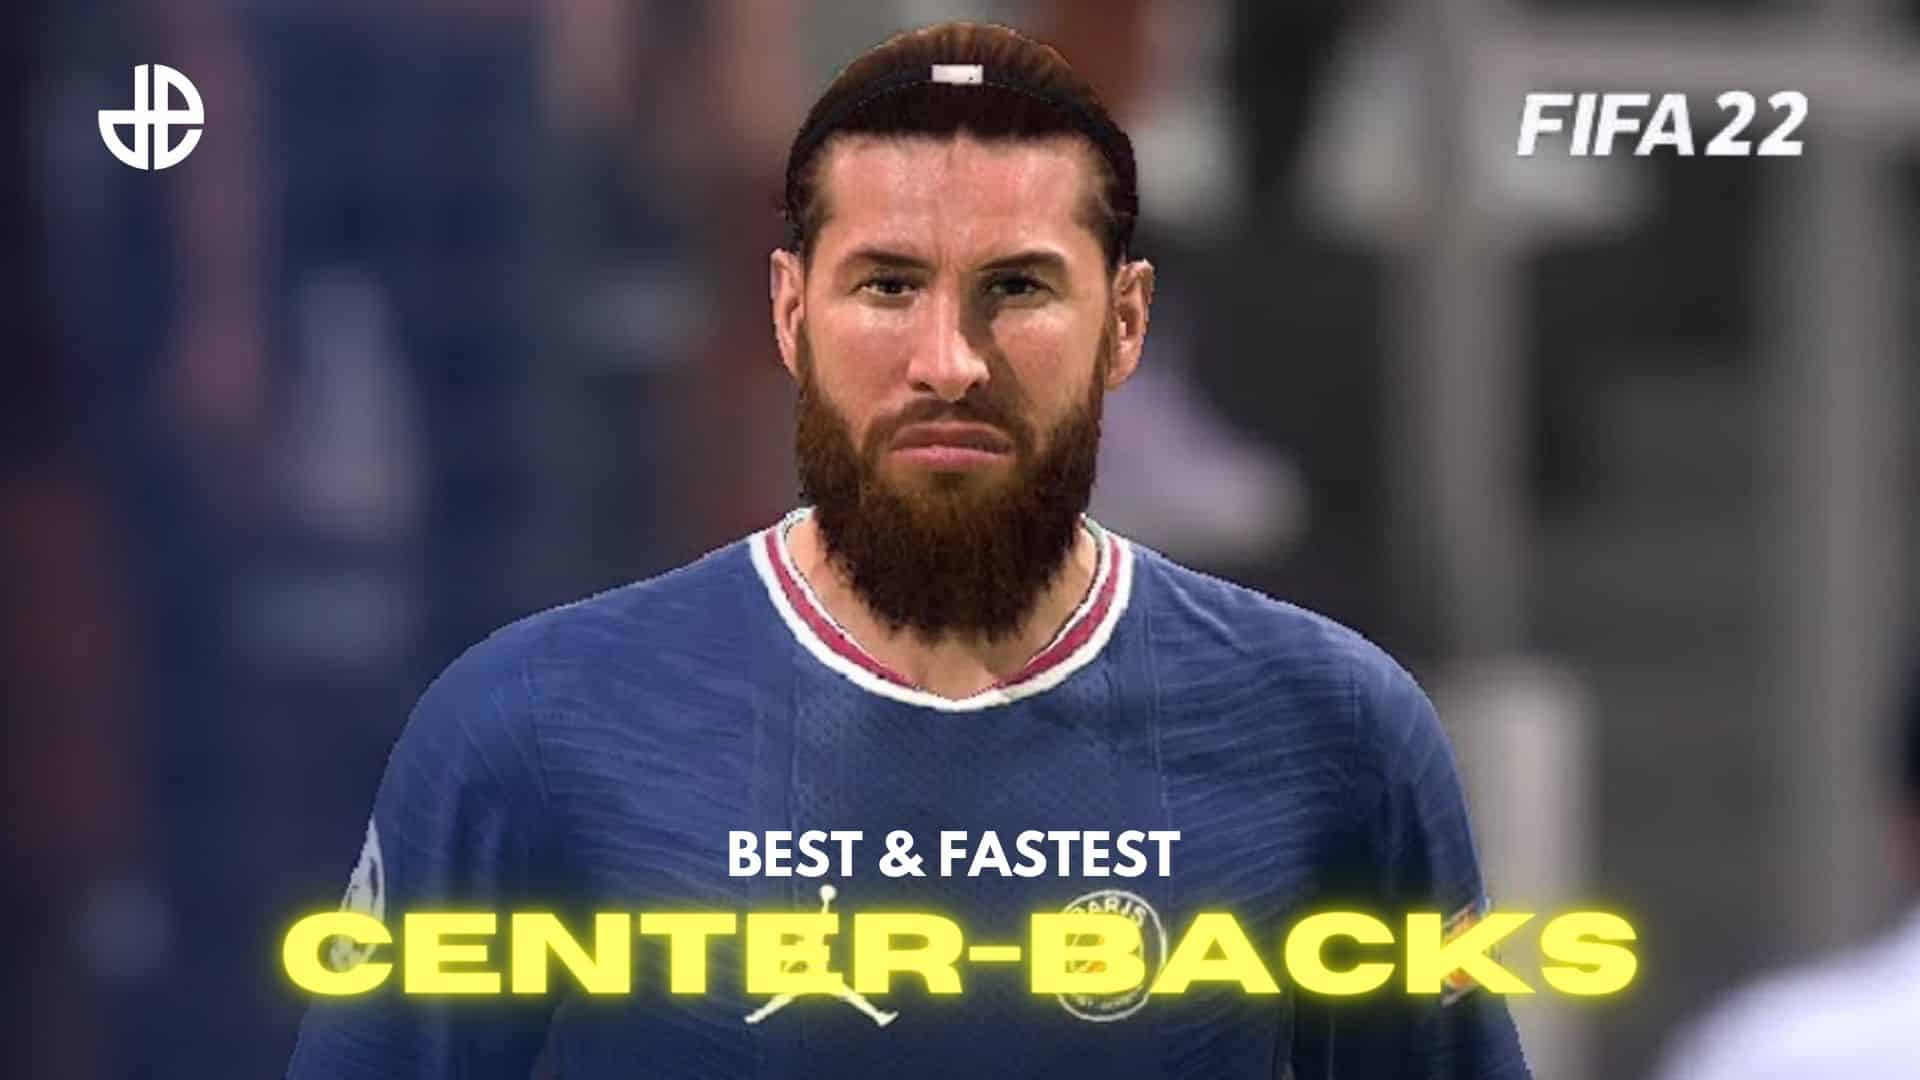 FIFA 22 center-backs best